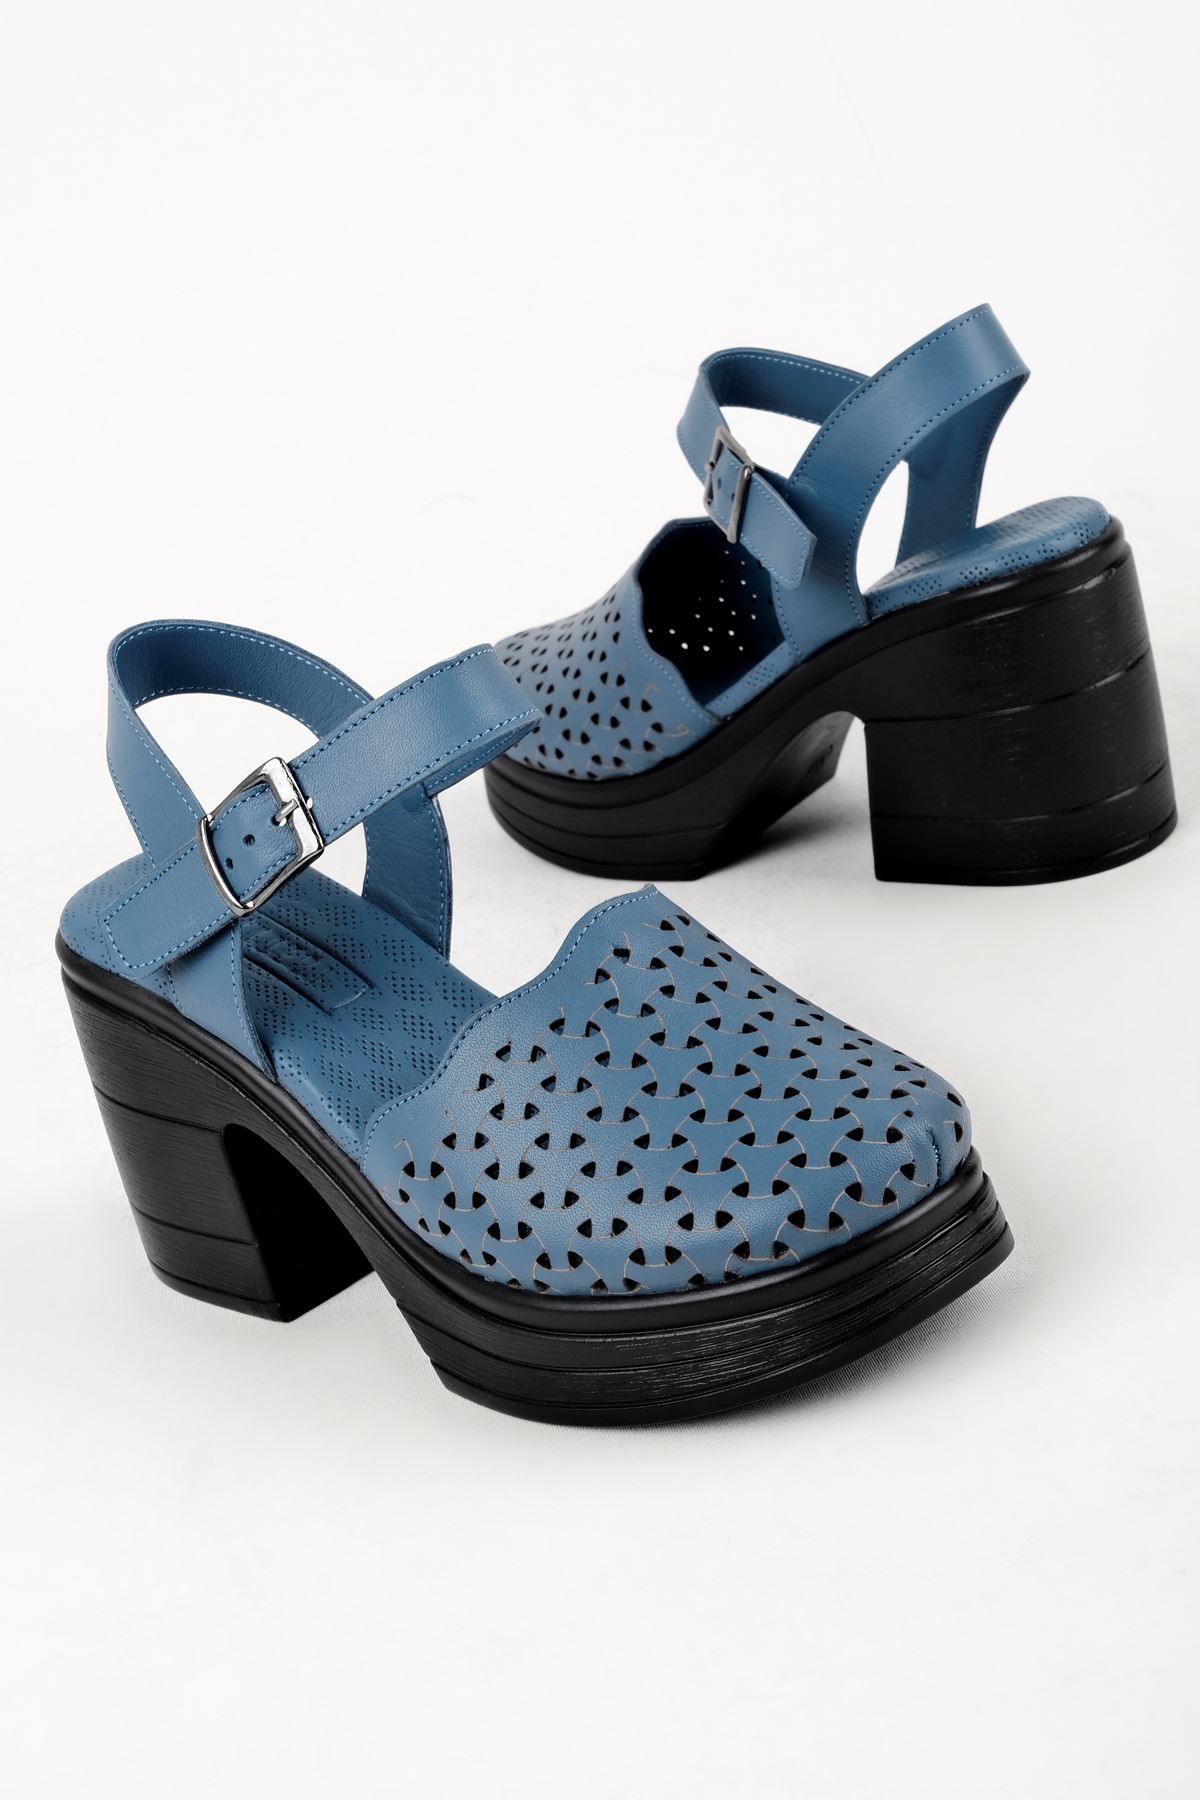 Kely Kadın Hakiki Deri Desenli Önü Kapalı Topuklu Sandalet (B3121) - Mavi